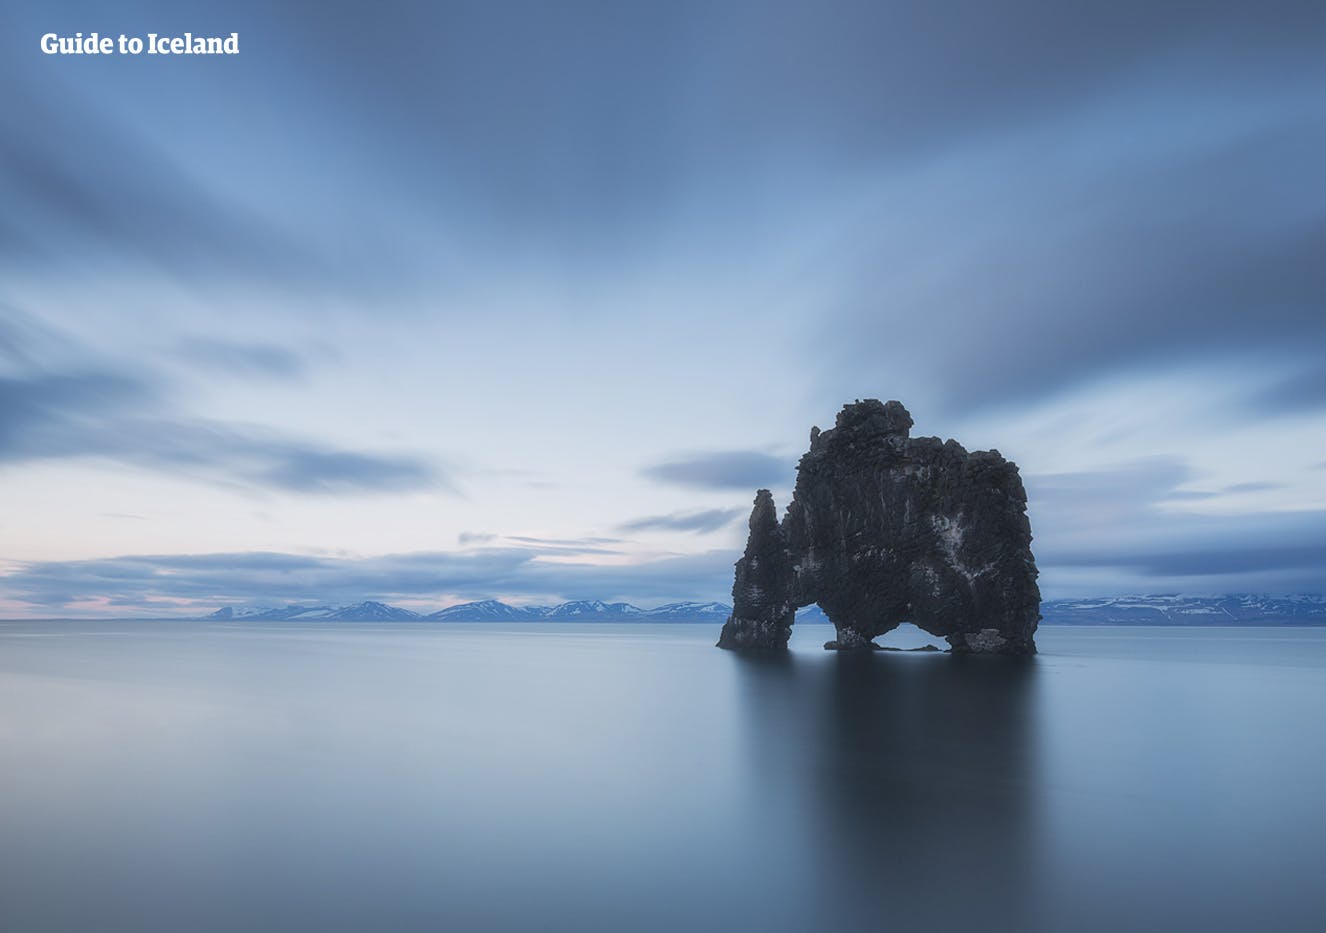 La impresionante pila de mar de Hvítserkur se encuentra en el norte de Islandia.